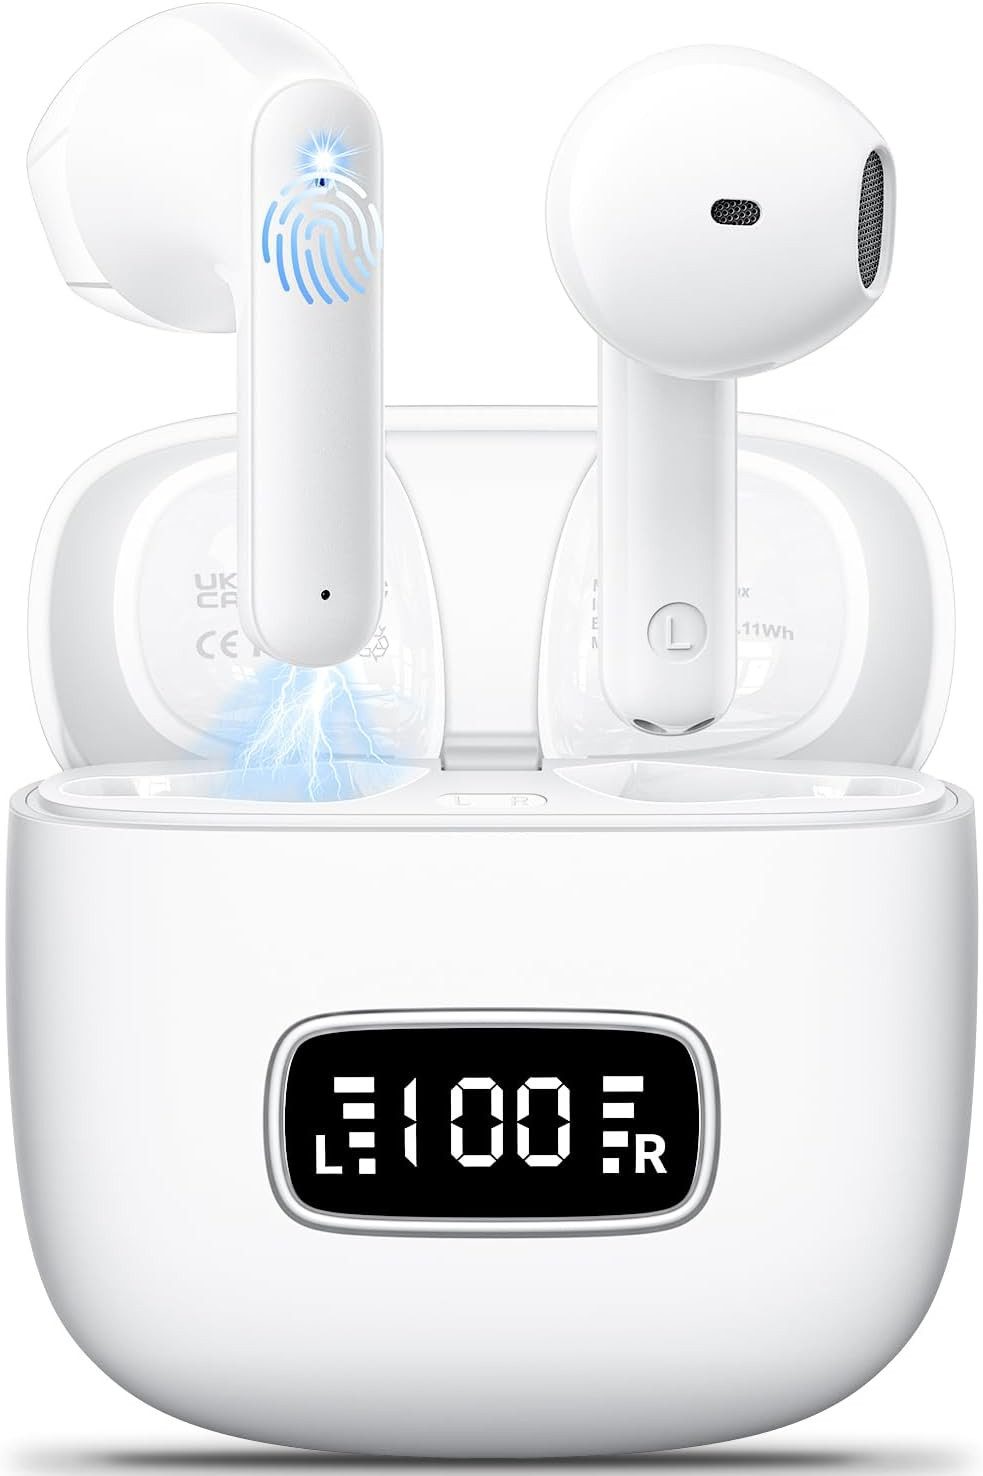 Godyse 42 Stunden Spielzeit mit nur einer Ladung In-Ear-Kopfhörer (4 Mikrofone mit ENC-Technologie reduzieren Umgebungsgeräusche um 35 dB, für kristallklare Anrufe in jeder Umgebung., Leichtes Design und superweiches Material für maximalen Tragekomfort)